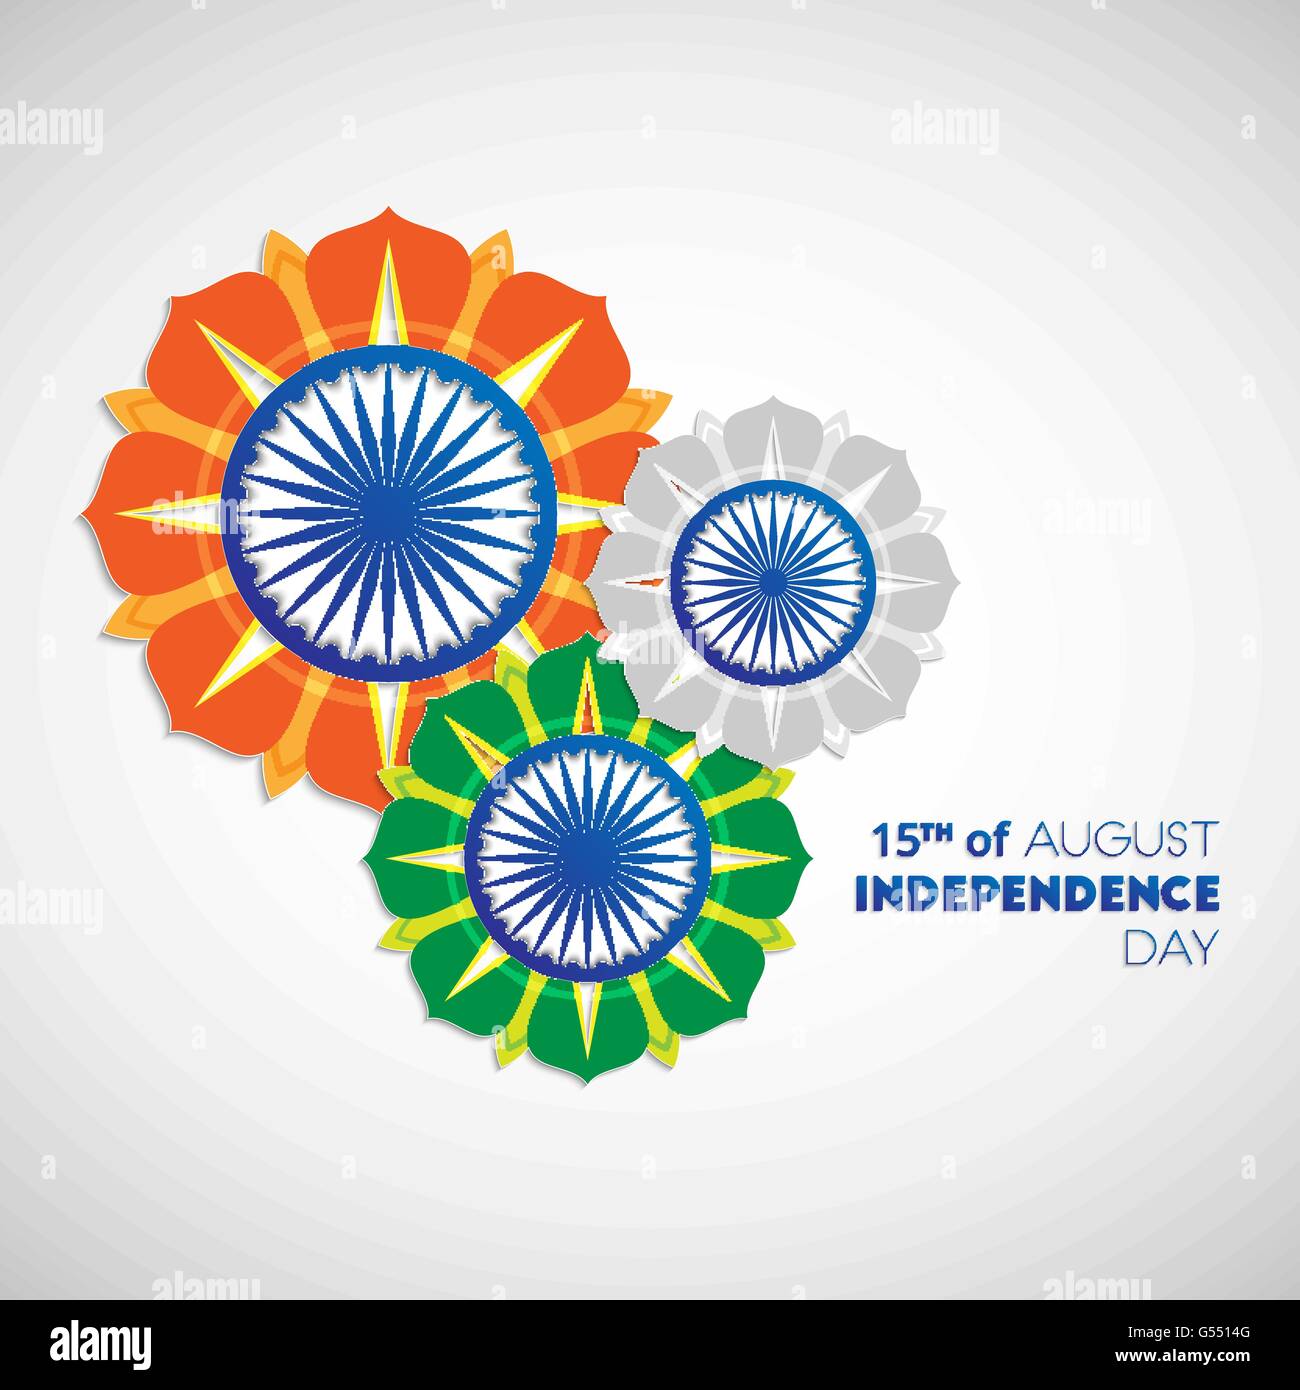 Felice Giorno Di Indipendenza in India. Il 15 di agosto. Indian Independence Day abstract sfondo con fiori e ruota di ashoka Illustrazione Vettoriale